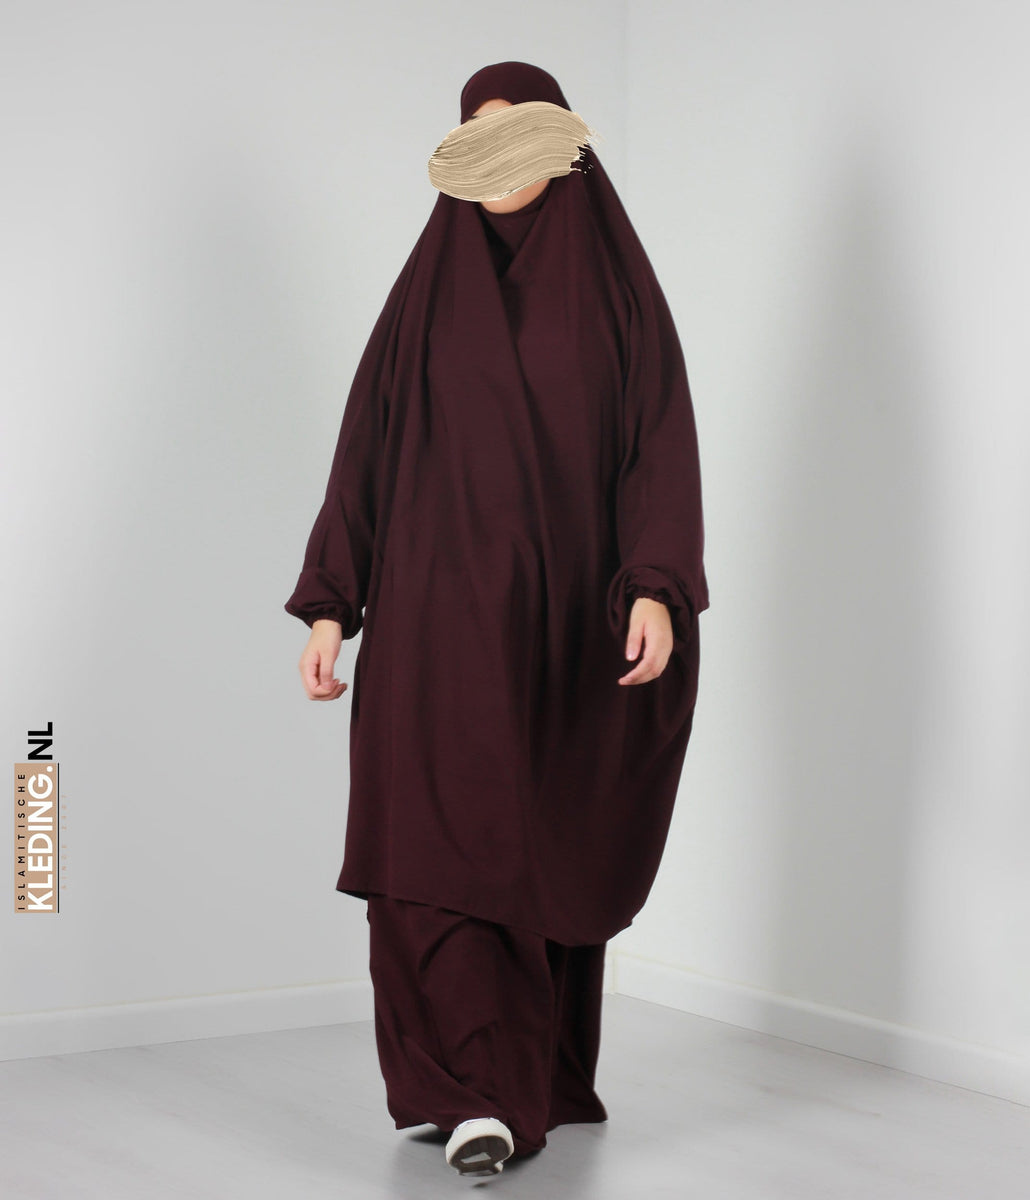 Khimarset Girls Dark Violet – islamitischekleding.nl